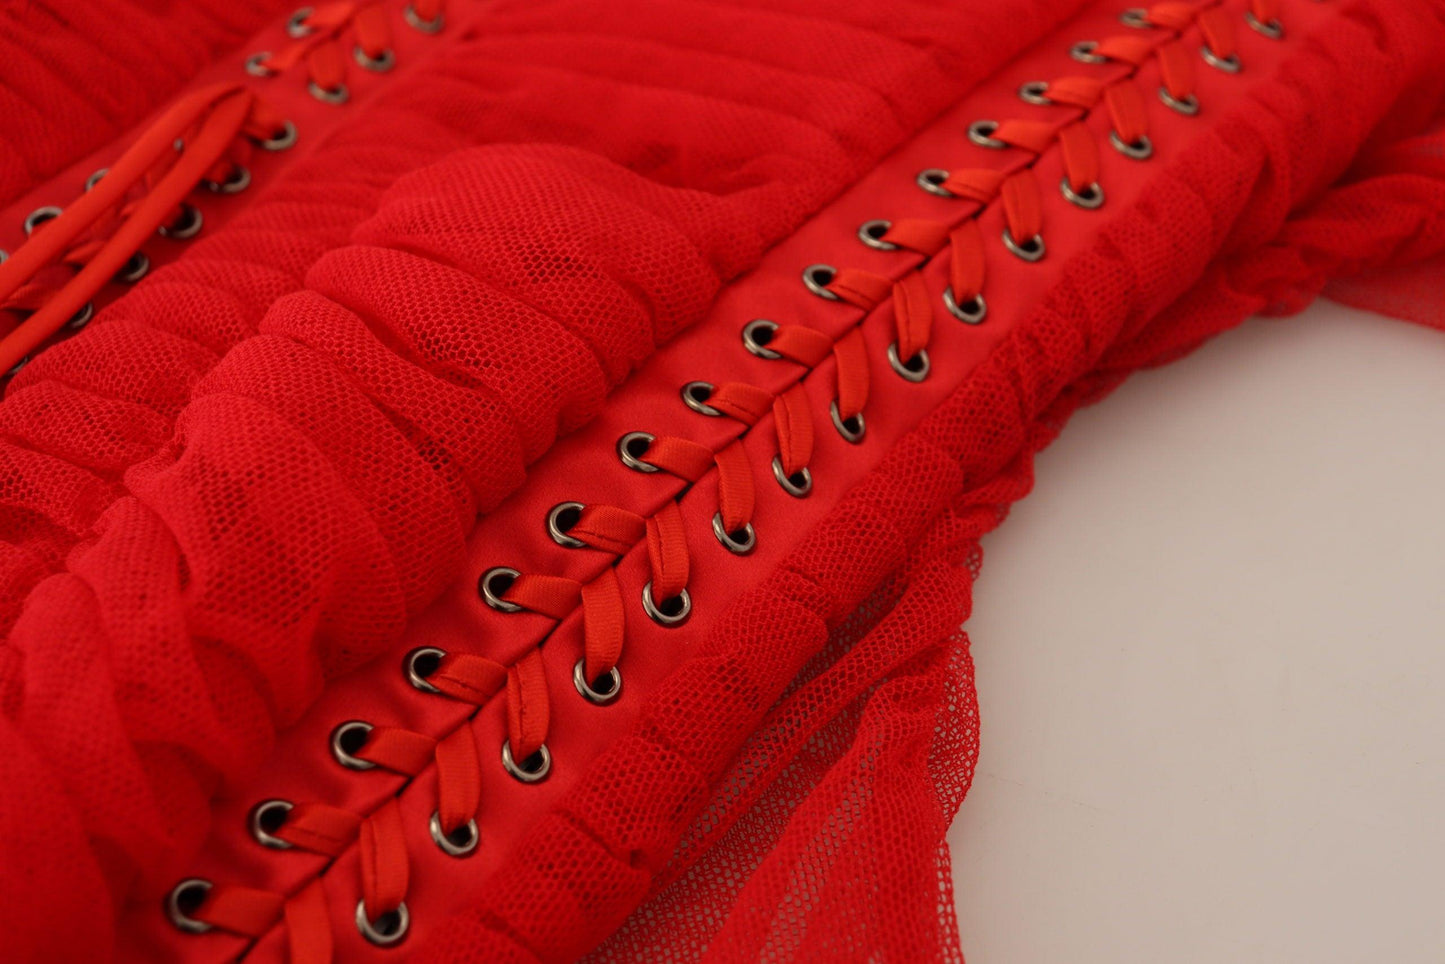 Dolce & Gabbana Elegant Red Bodycon Sheath Dress - PER.FASHION